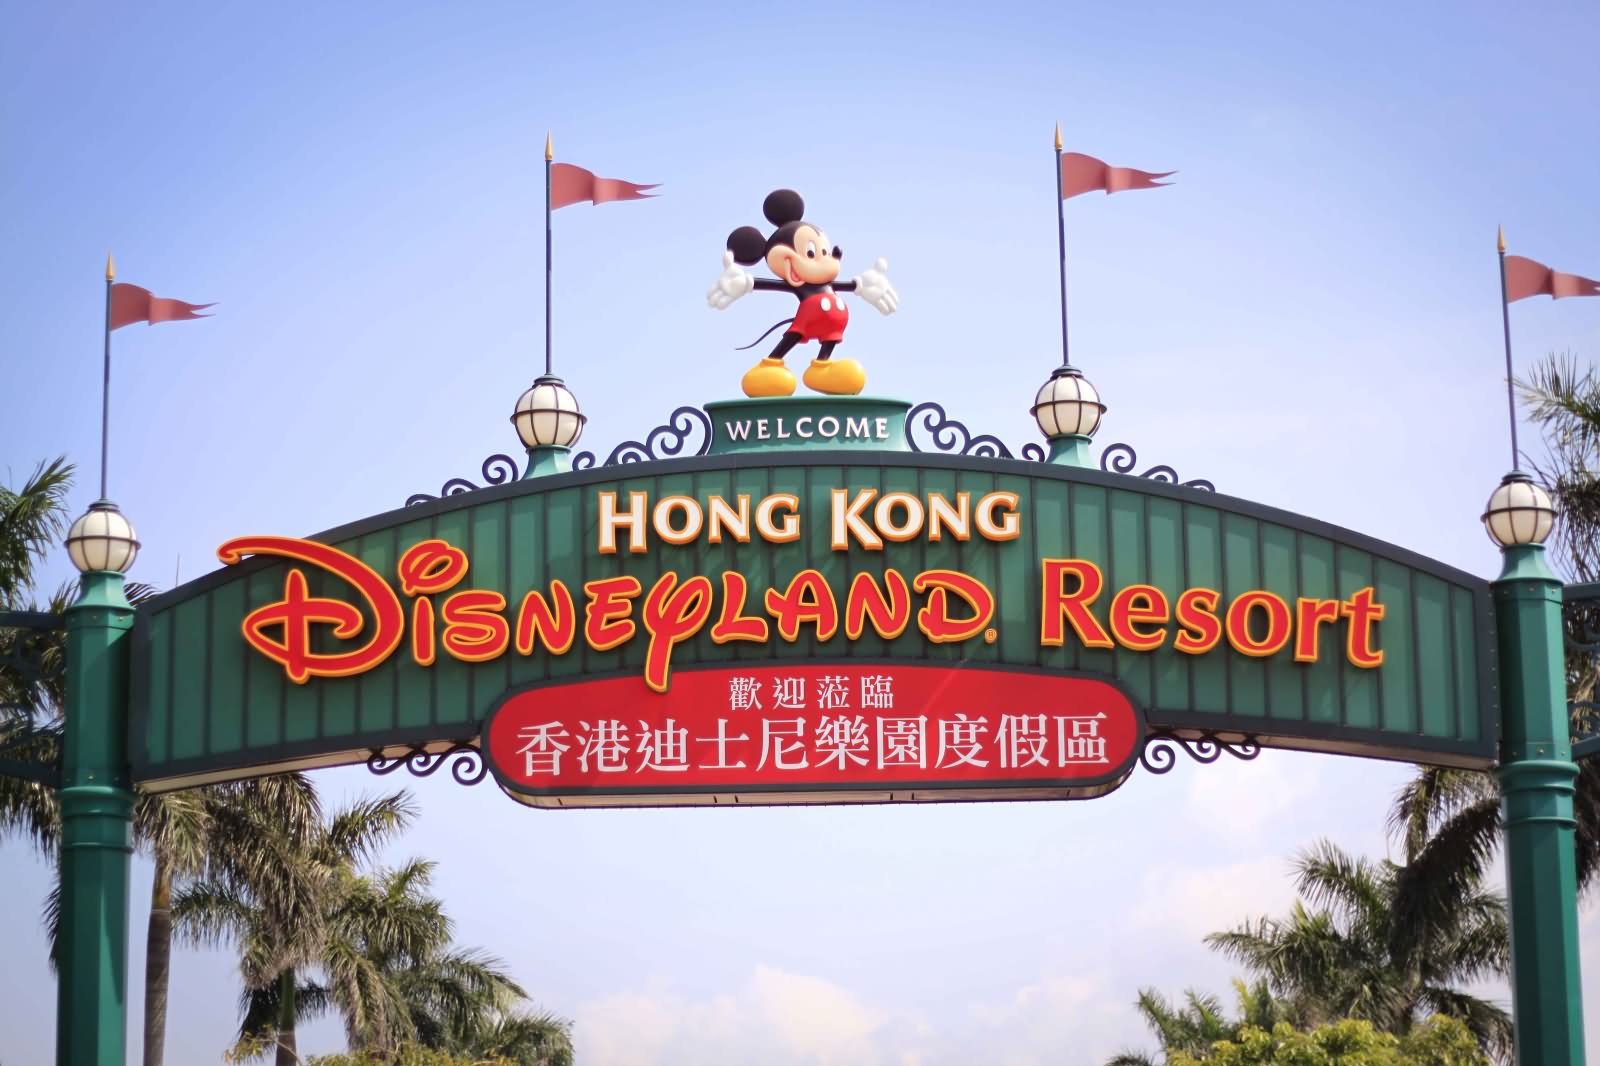 Main Gate Of The Disneyland Hong Kong